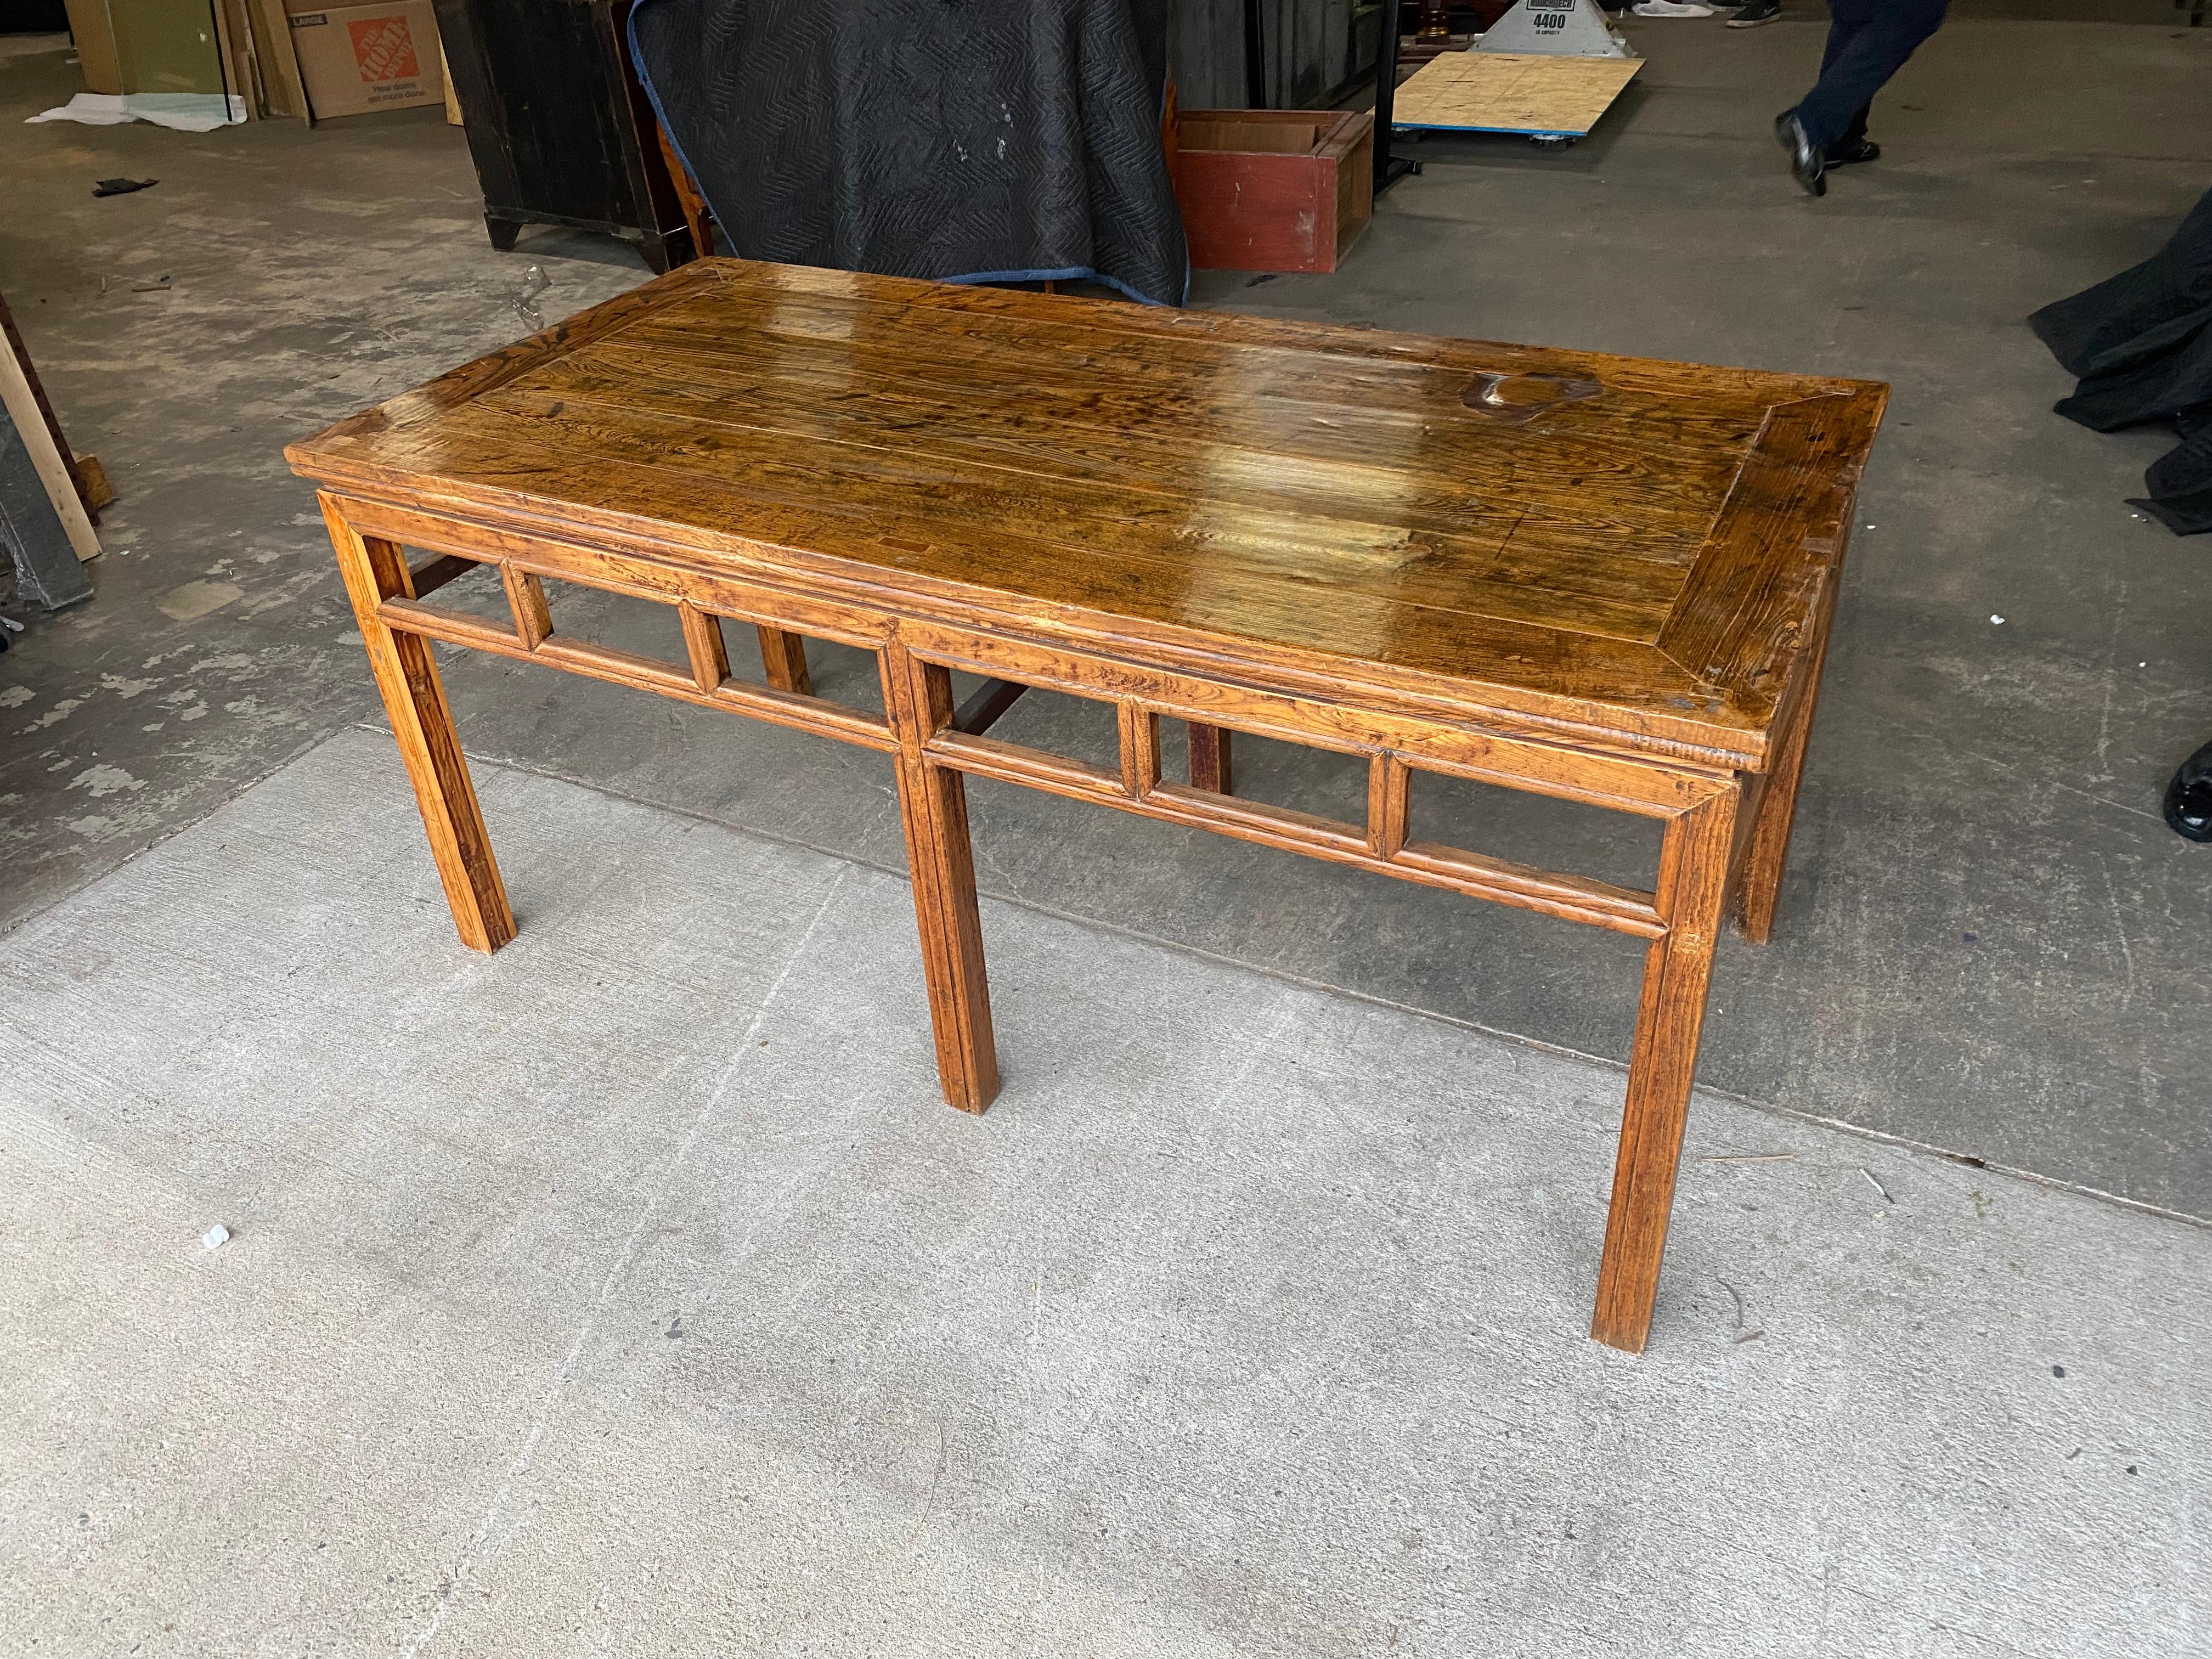 table console chinoise en bois dur du 19ème siècle - toutes les pièces sont mortaisées

Le tablier s'ouvre à 22